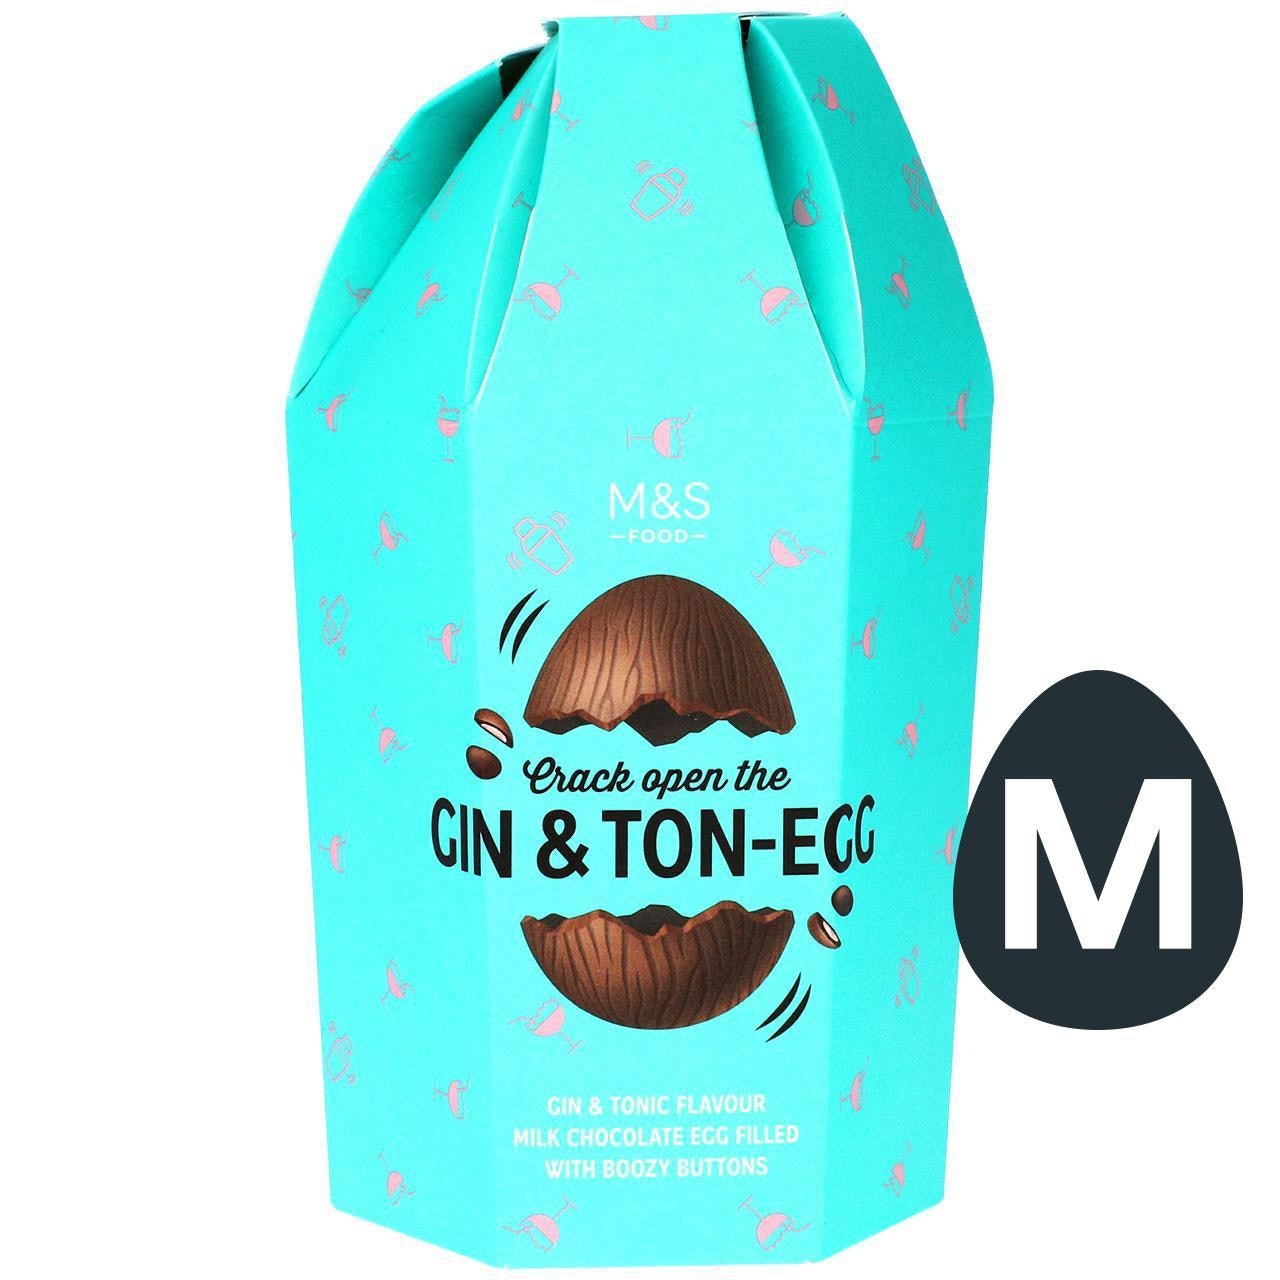 Spoločnosť M&S uviedla na trh veľkonočné vajíčko s ginom a tonikom